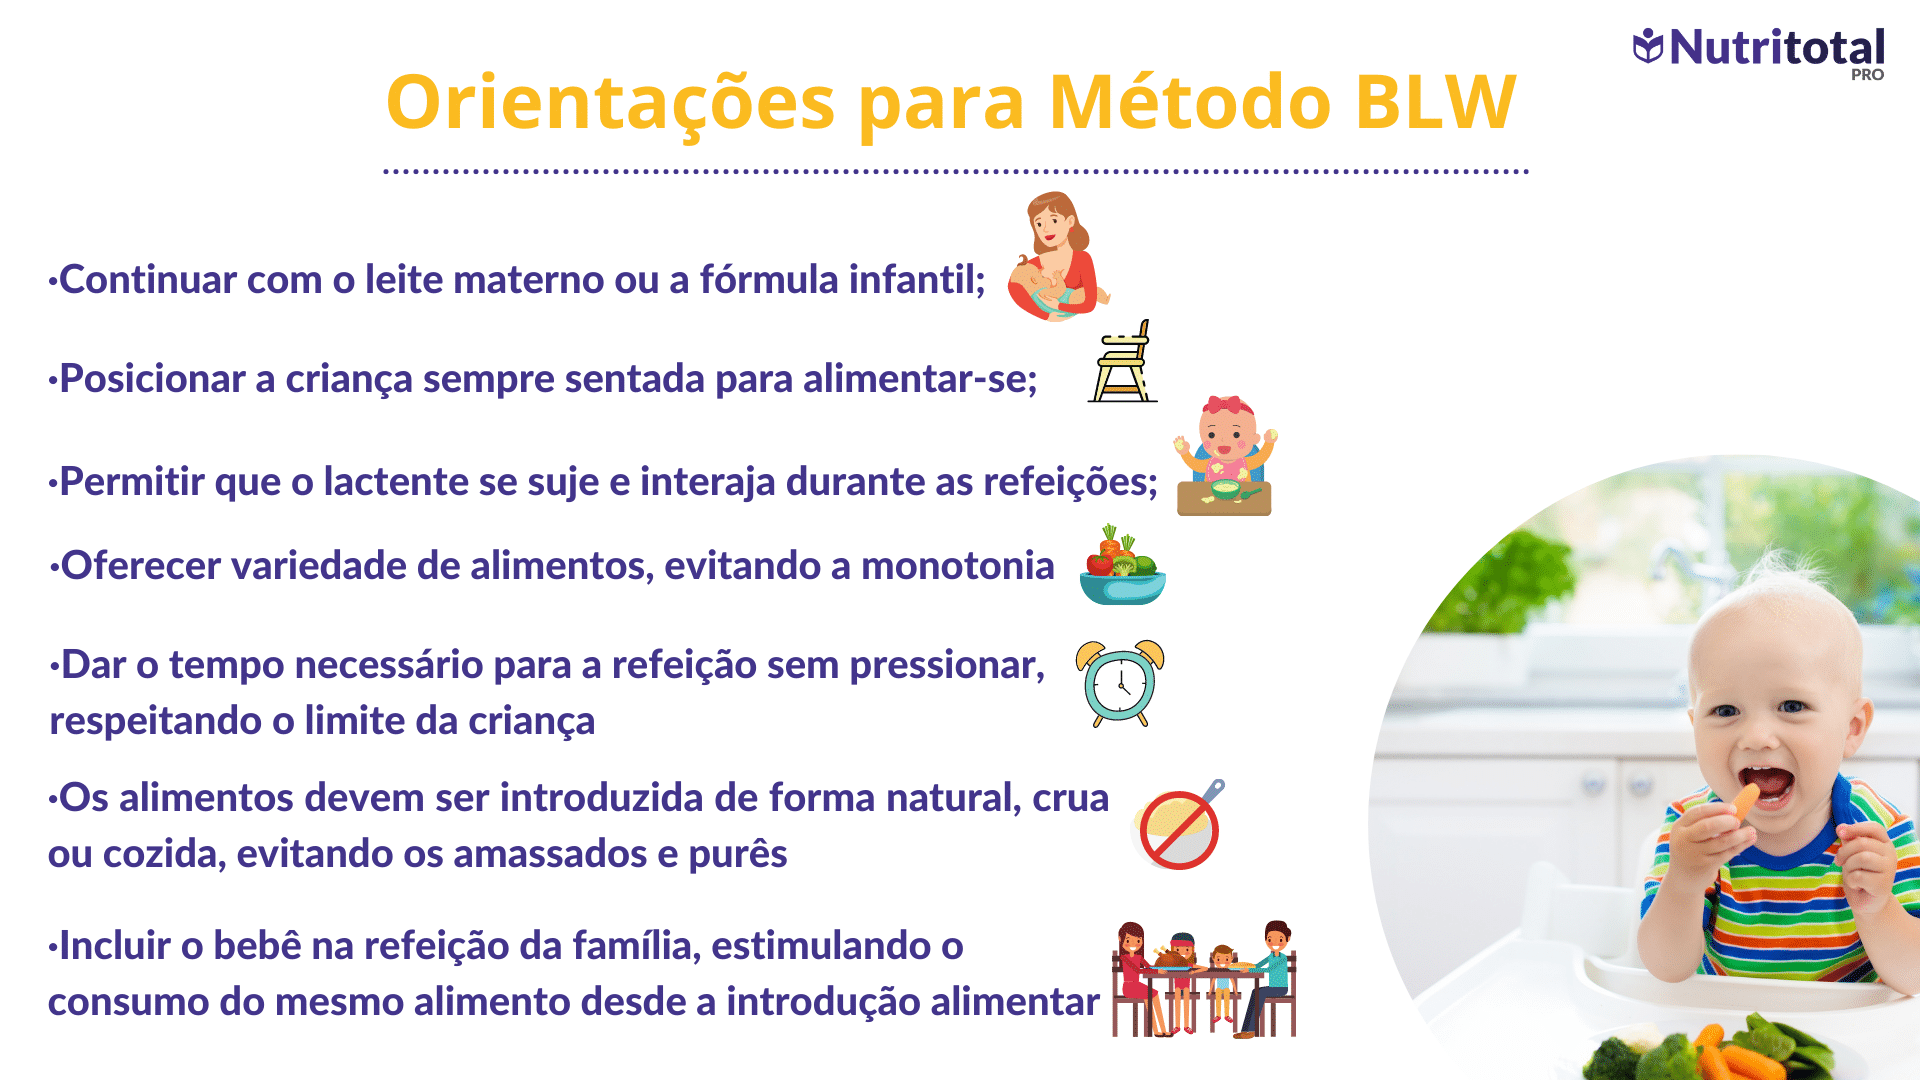 O que é o método BLW?